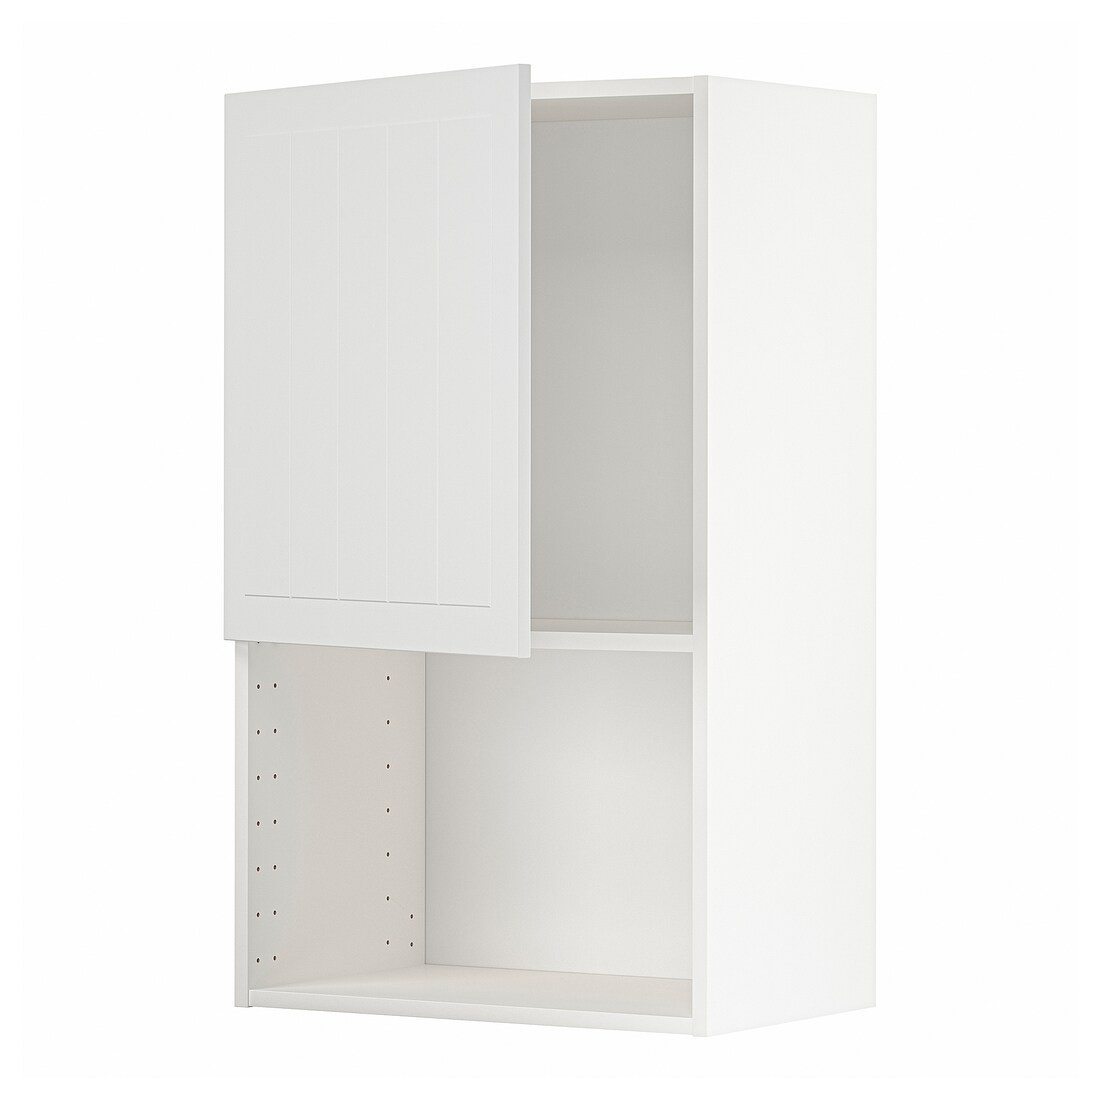 IKEA METOD МЕТОД Навісна шафа для НВЧ-печі, білий / Stensund білий, 60x100 см 89463167 894.631.67